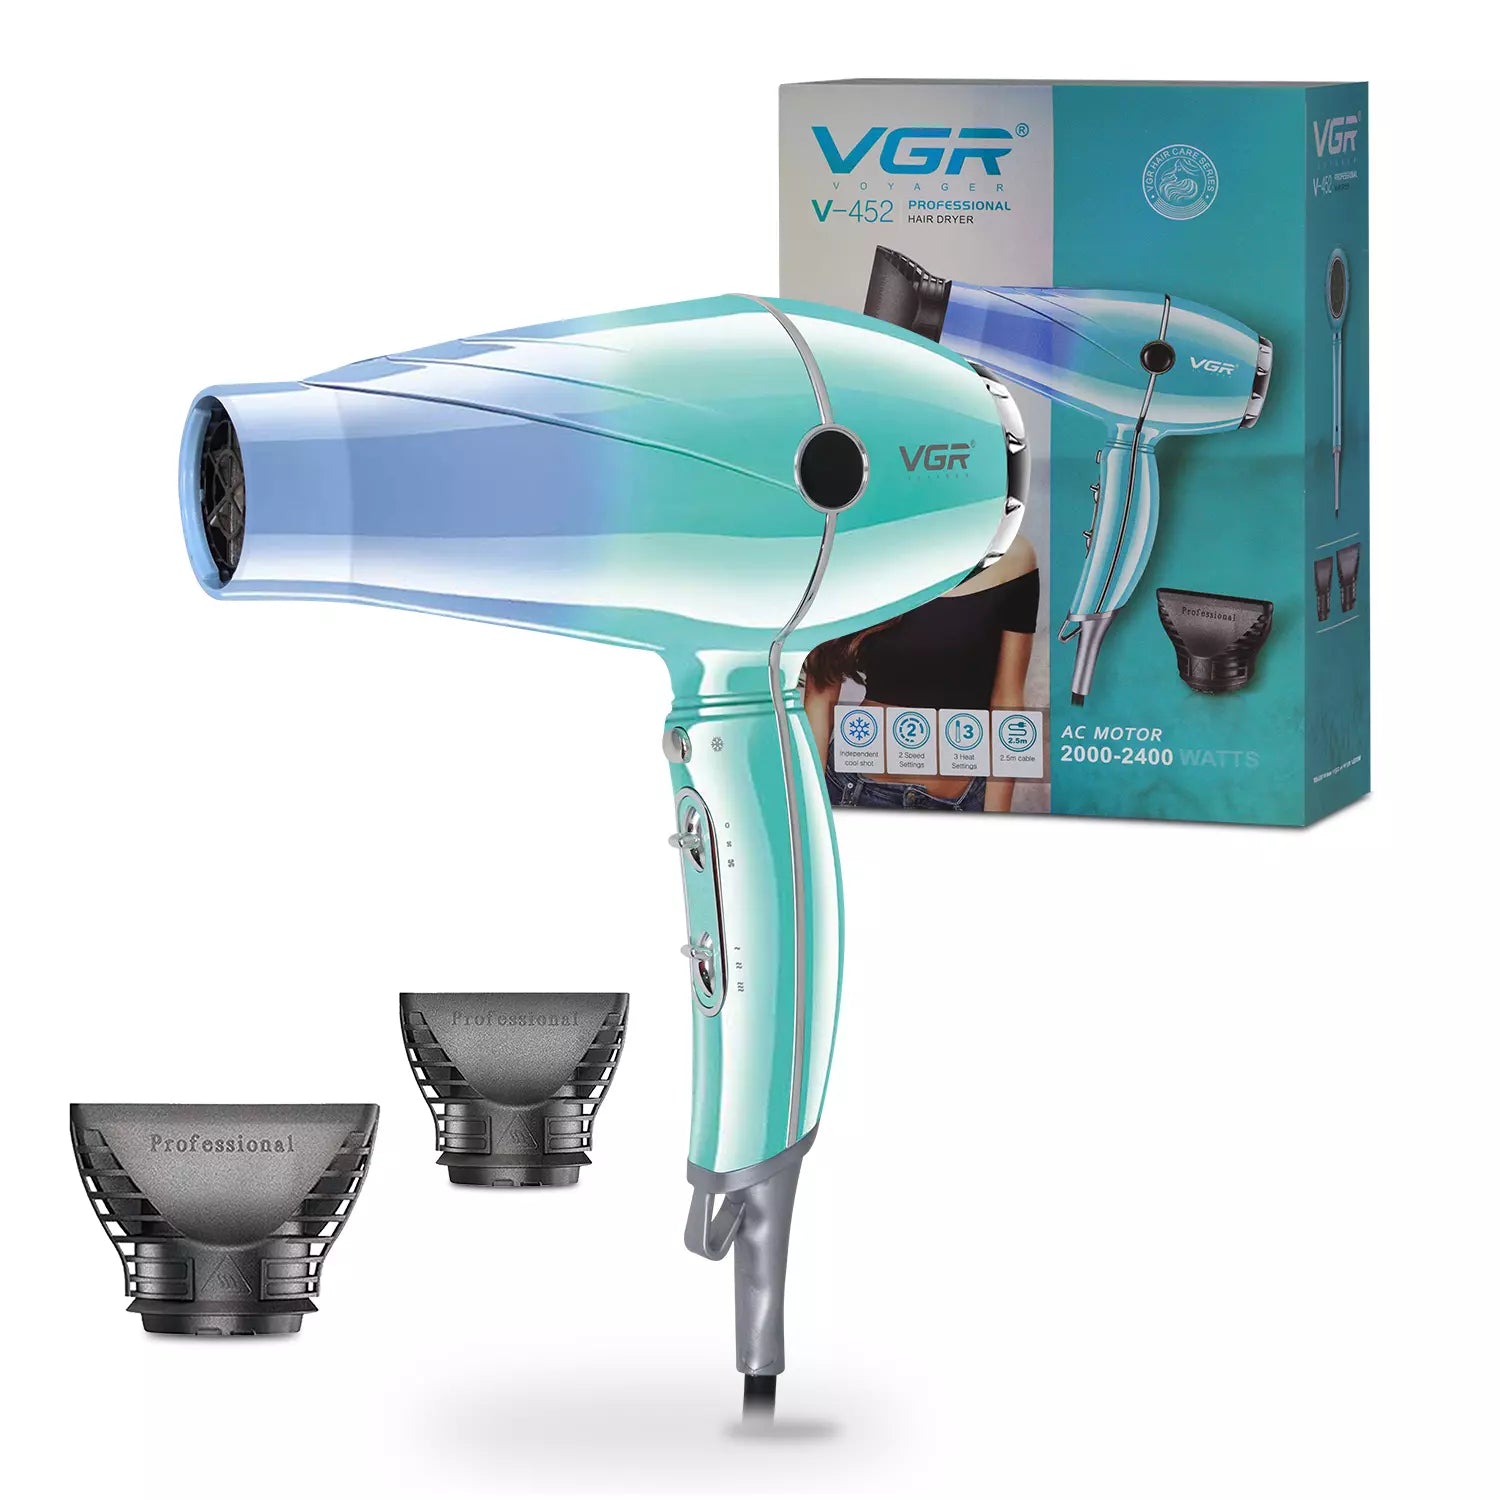 VGR V-452 Hair Dryer For Unisex, Green